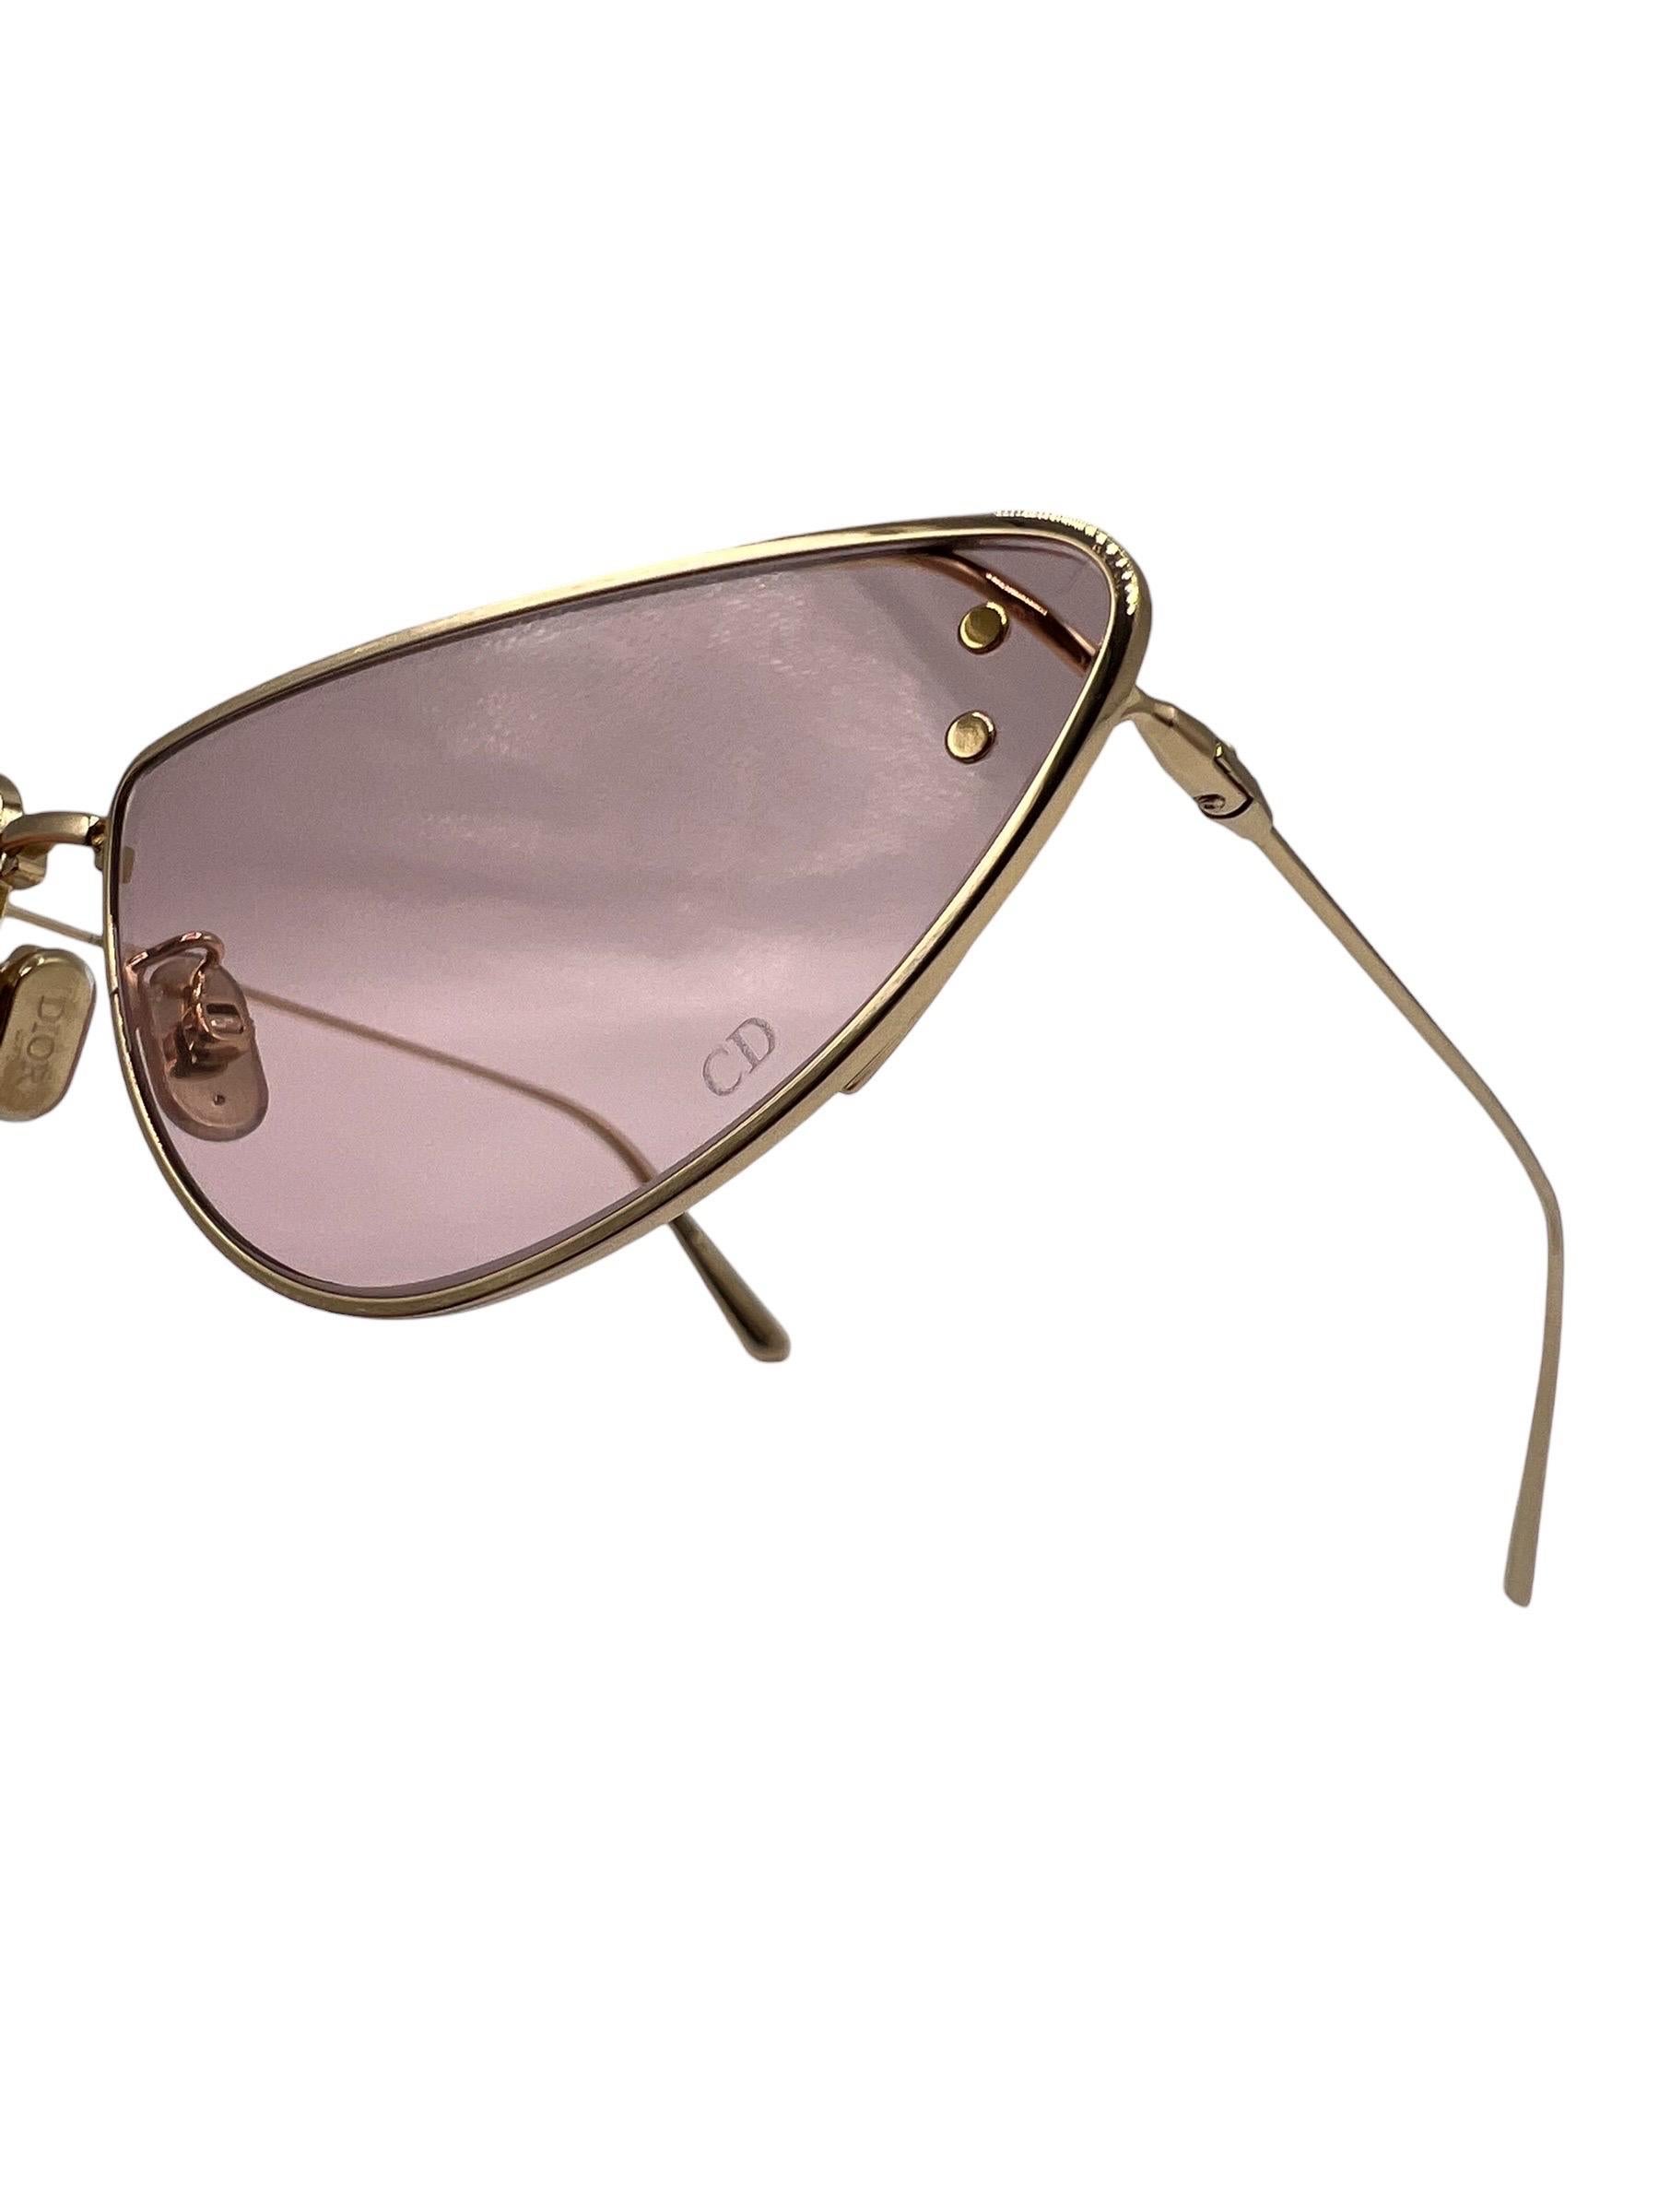 Occhiali firmati Christian Dior, realizzati in metallo placcato oro nella forma irregolare a farfalla. Caratterizzati da lenti rosa e una struttura sottile biforcata, con logo ”CD” impresso su una delle lenti. Munite di custodia, si presentano in